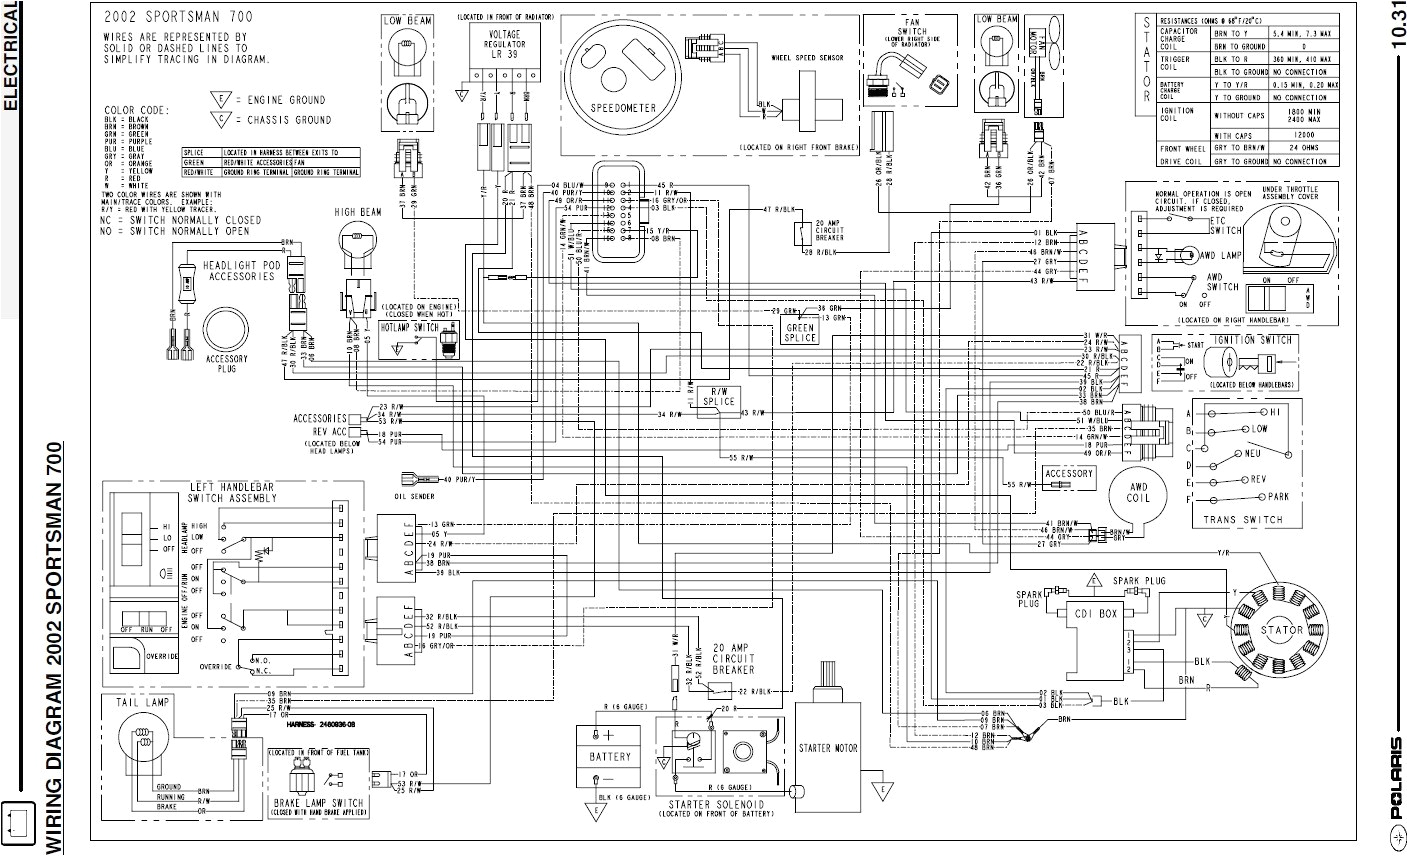 polaris rzr switch wiring diagram free download wiring diagram polaris rzr switch wiring diagram free download